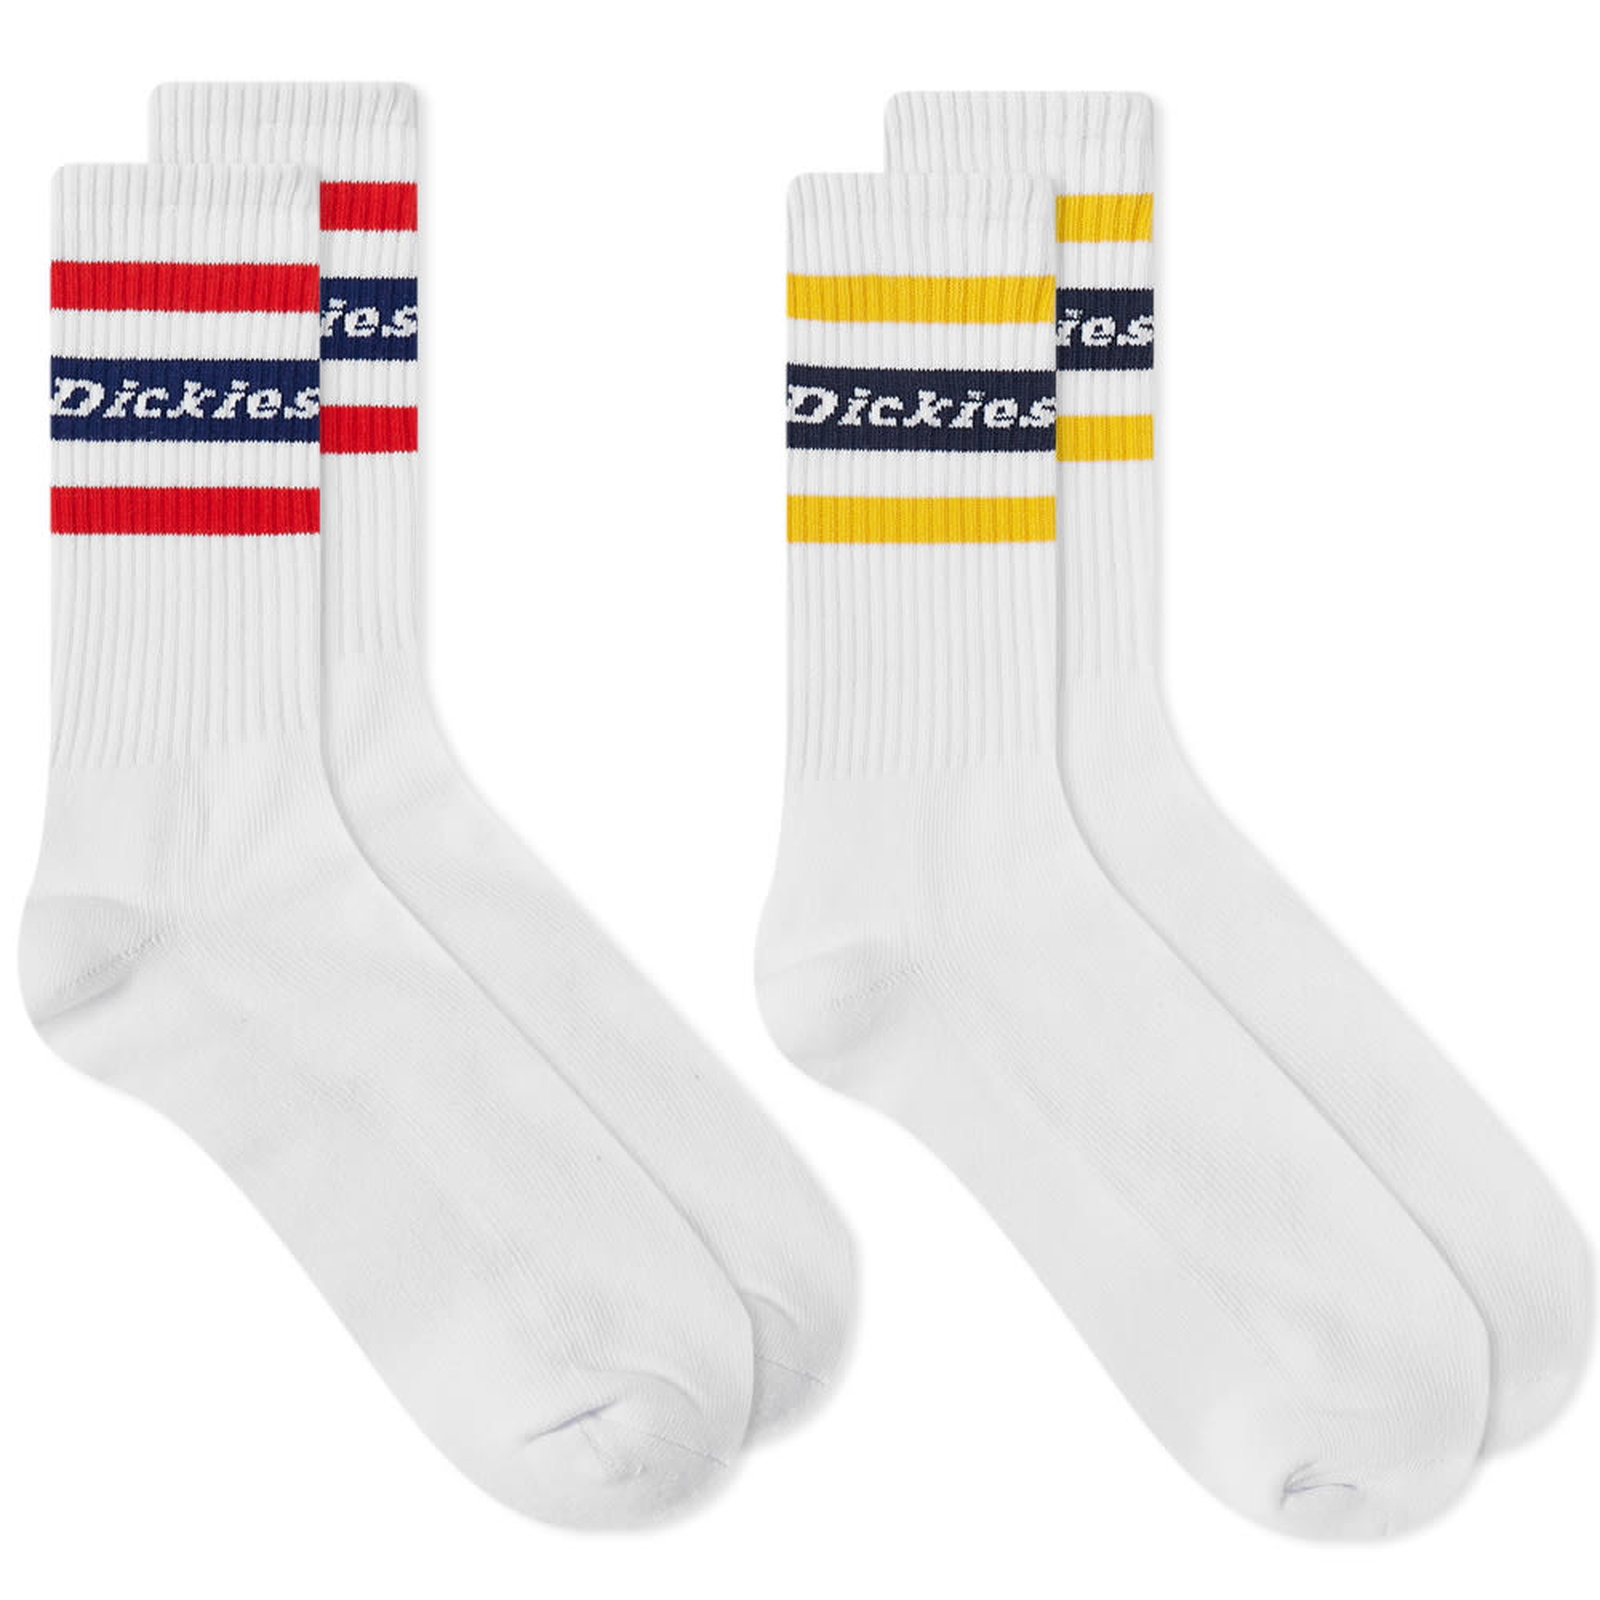 Genola Socks - 2 Pack